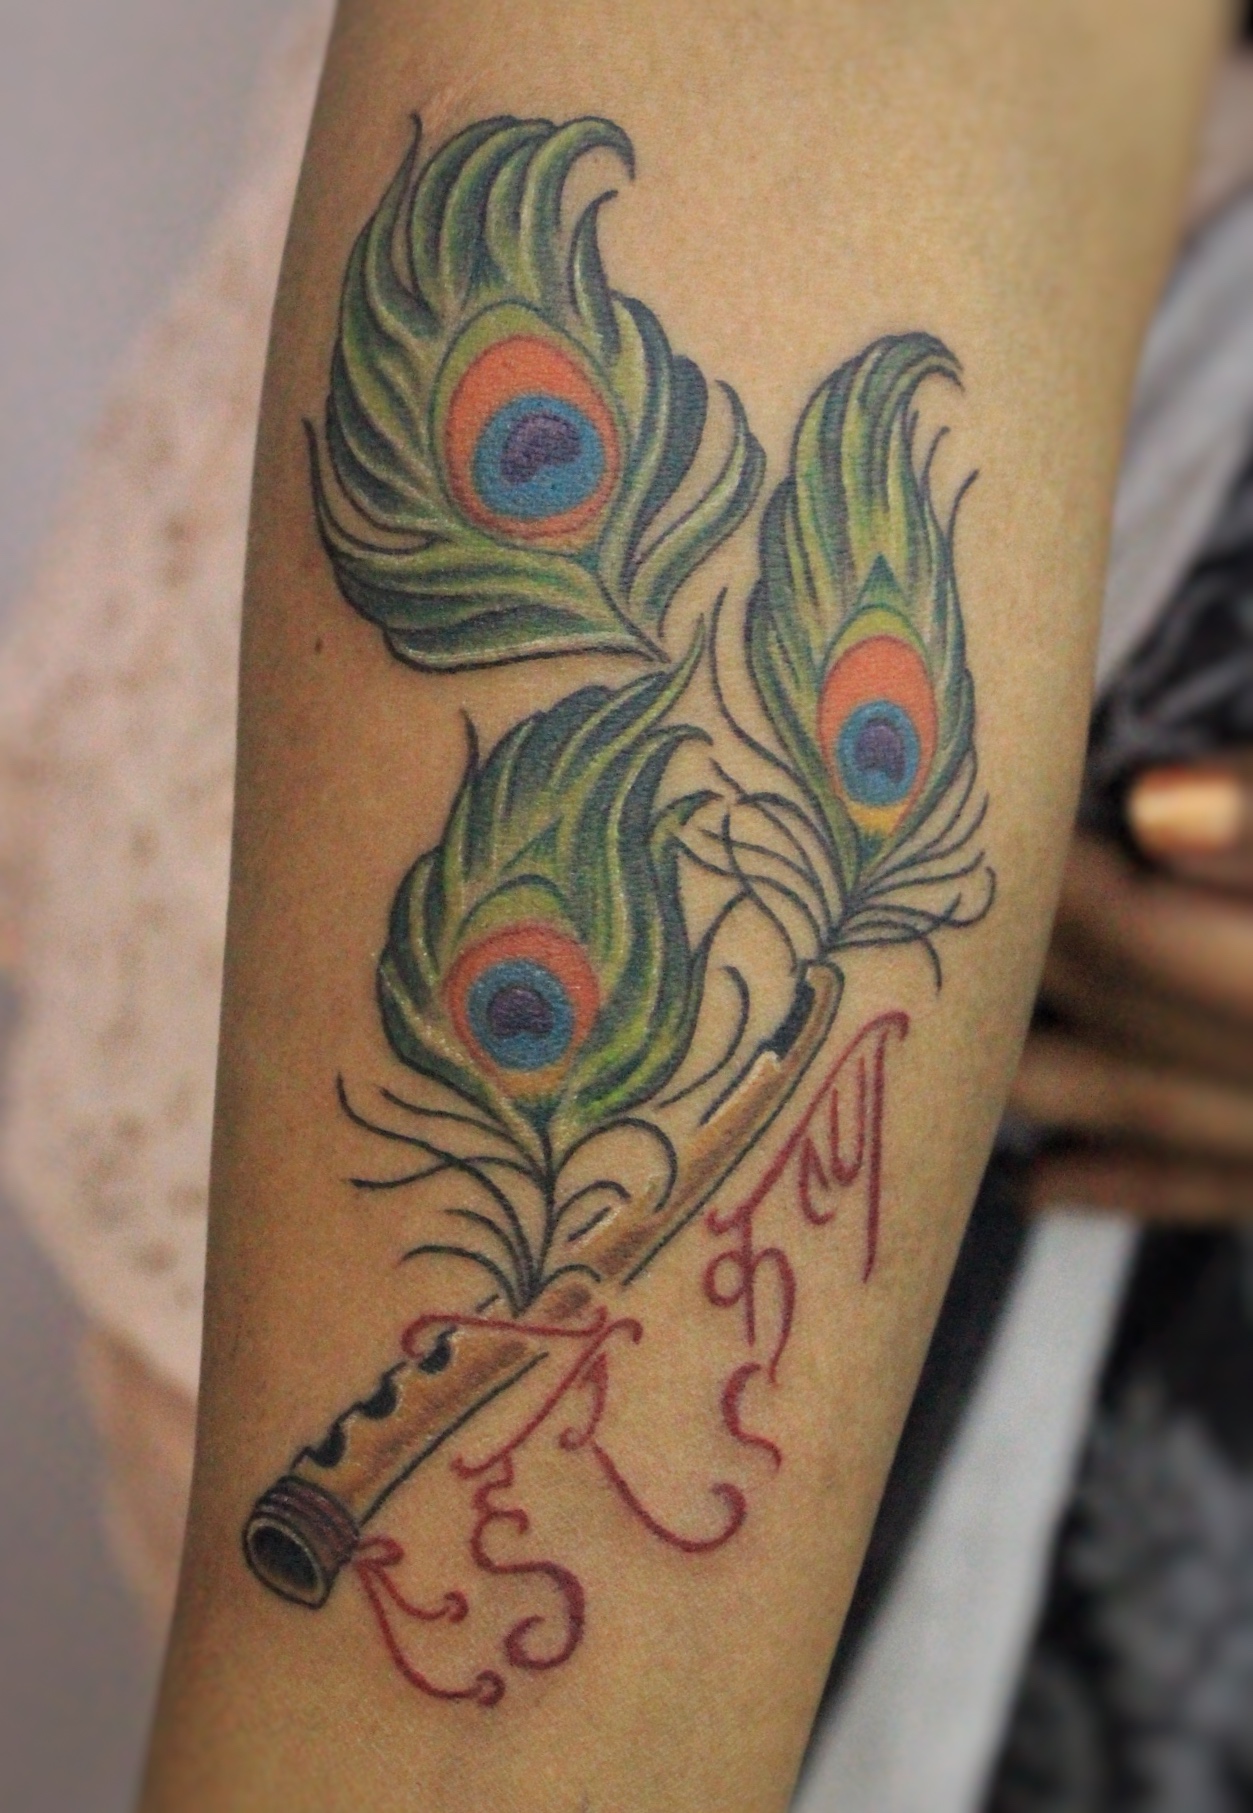 A lord Krishna tattoo... - The Art Ink Tattoo Studio | Facebook